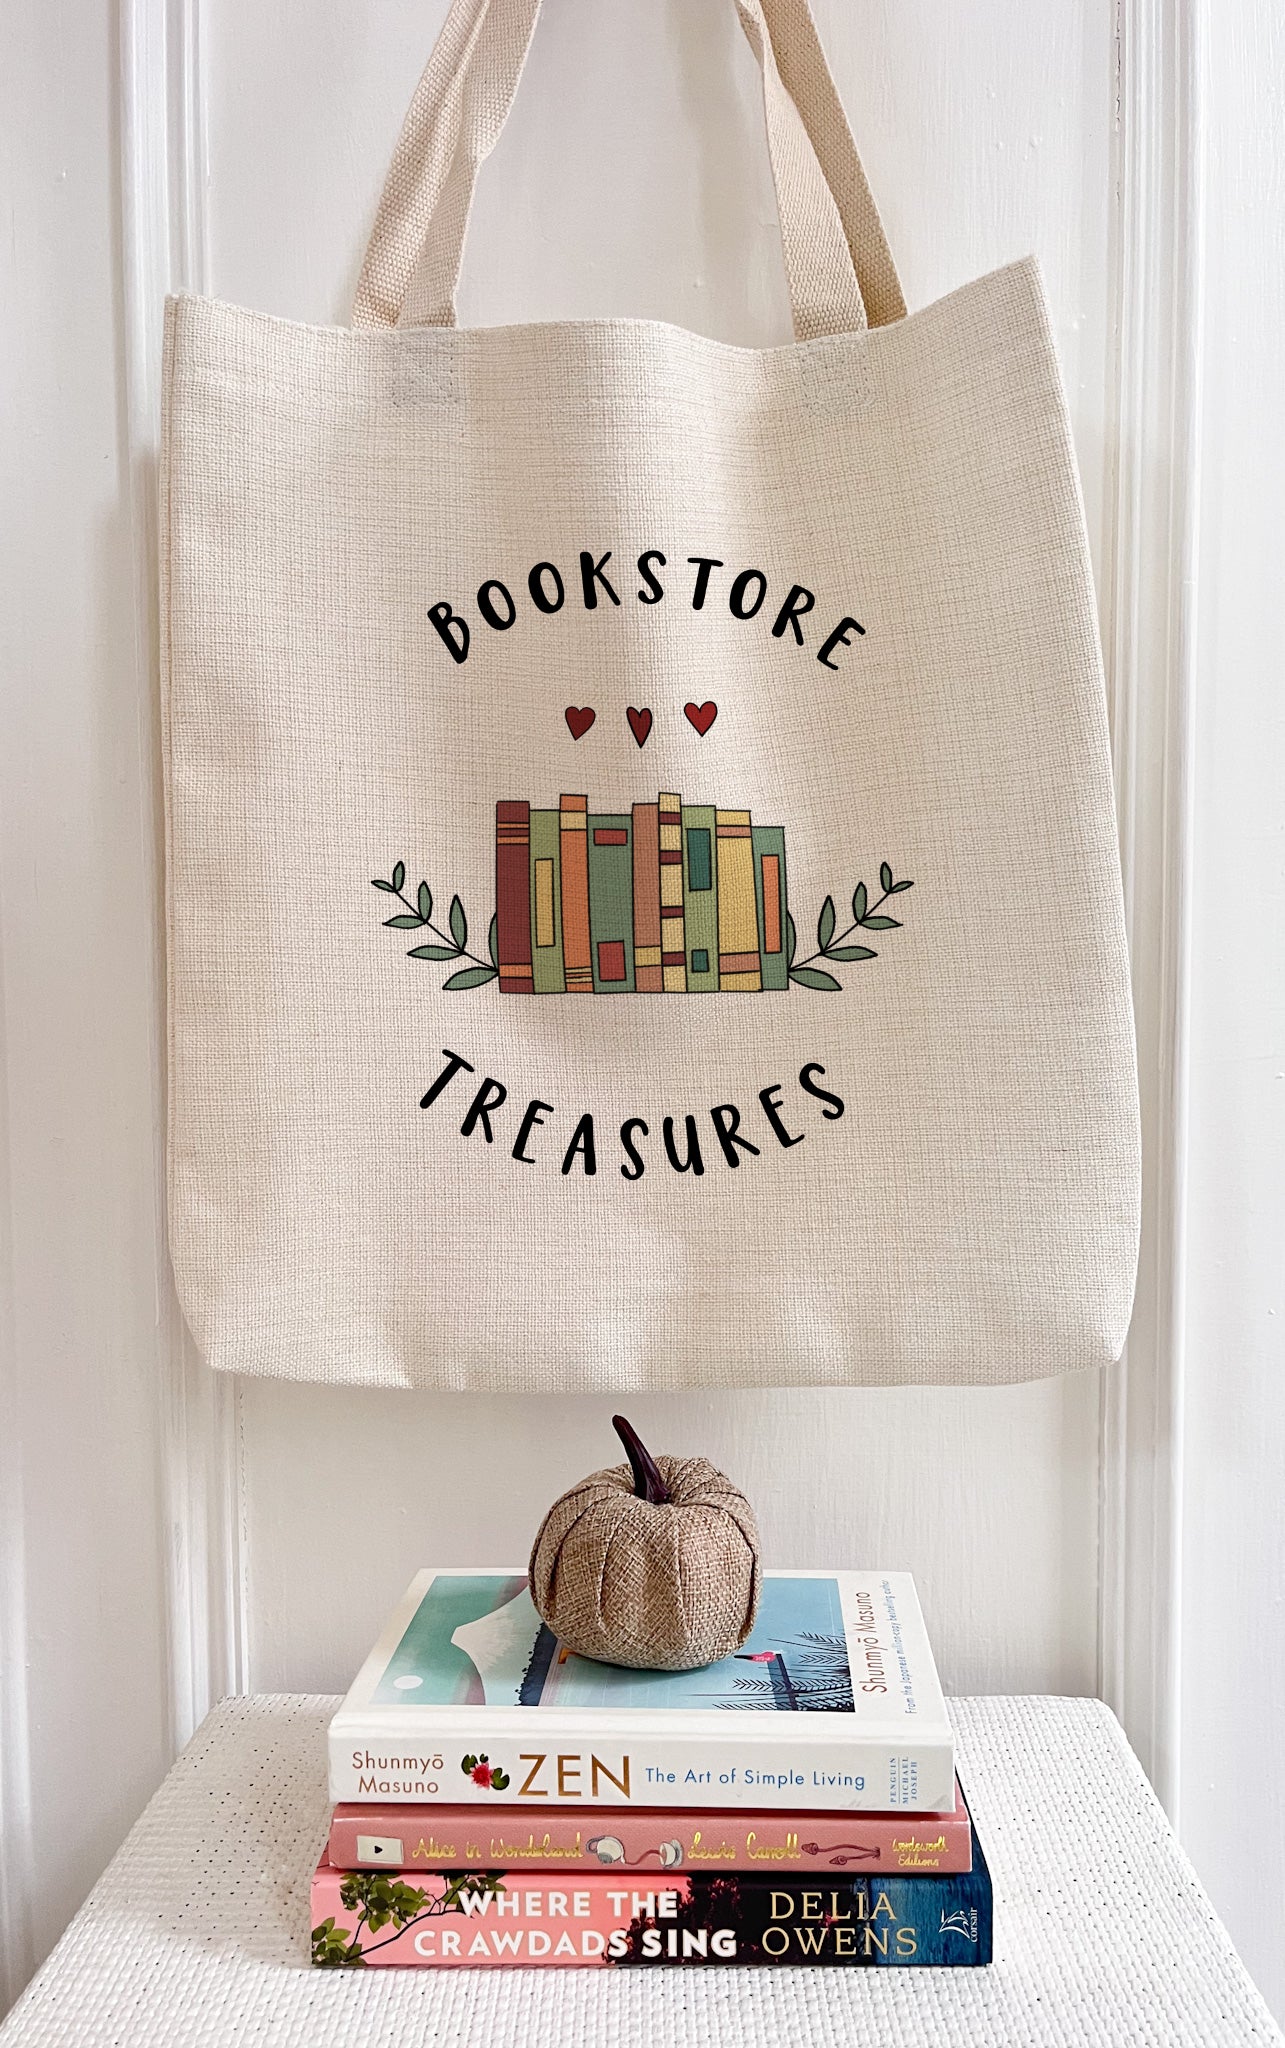 Bookstore Treasures Book/Tote Bag